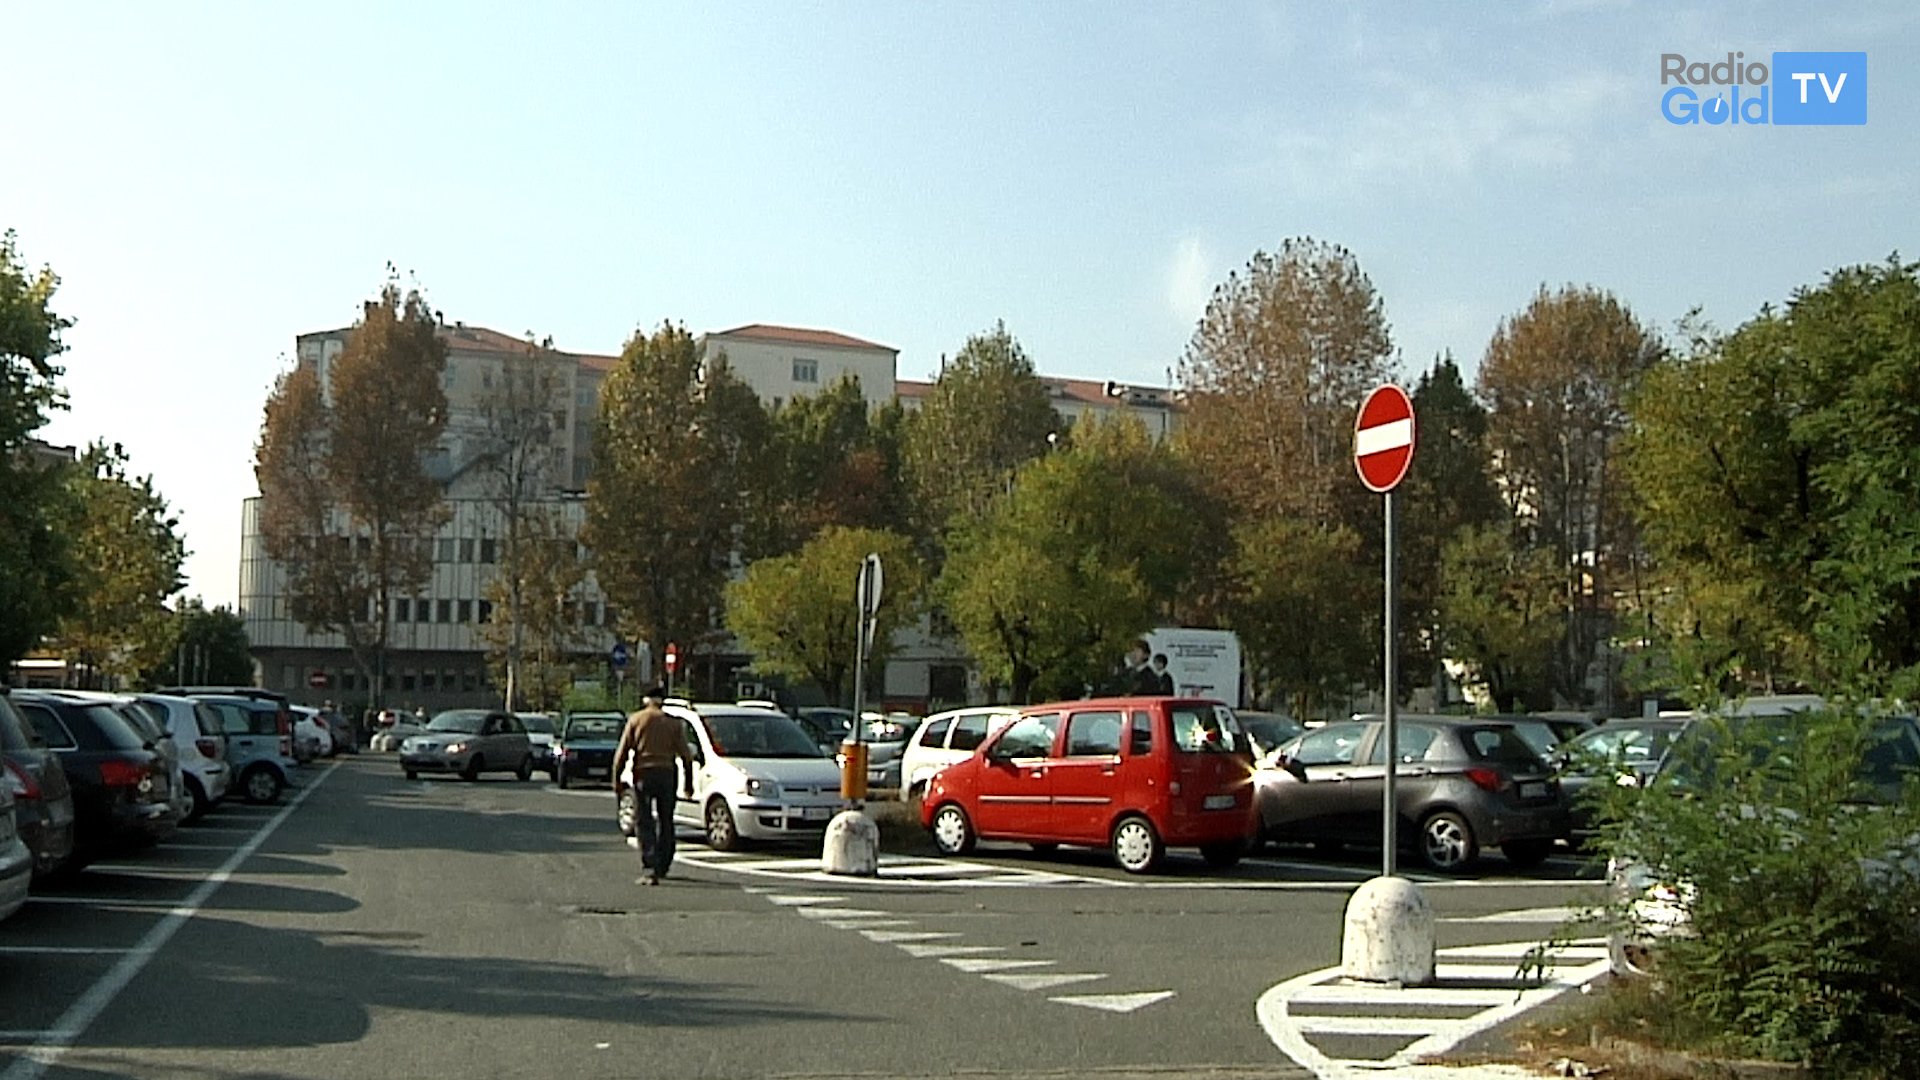 Piazzale Berlinguer: “Luci e telecamere entro l’estate”